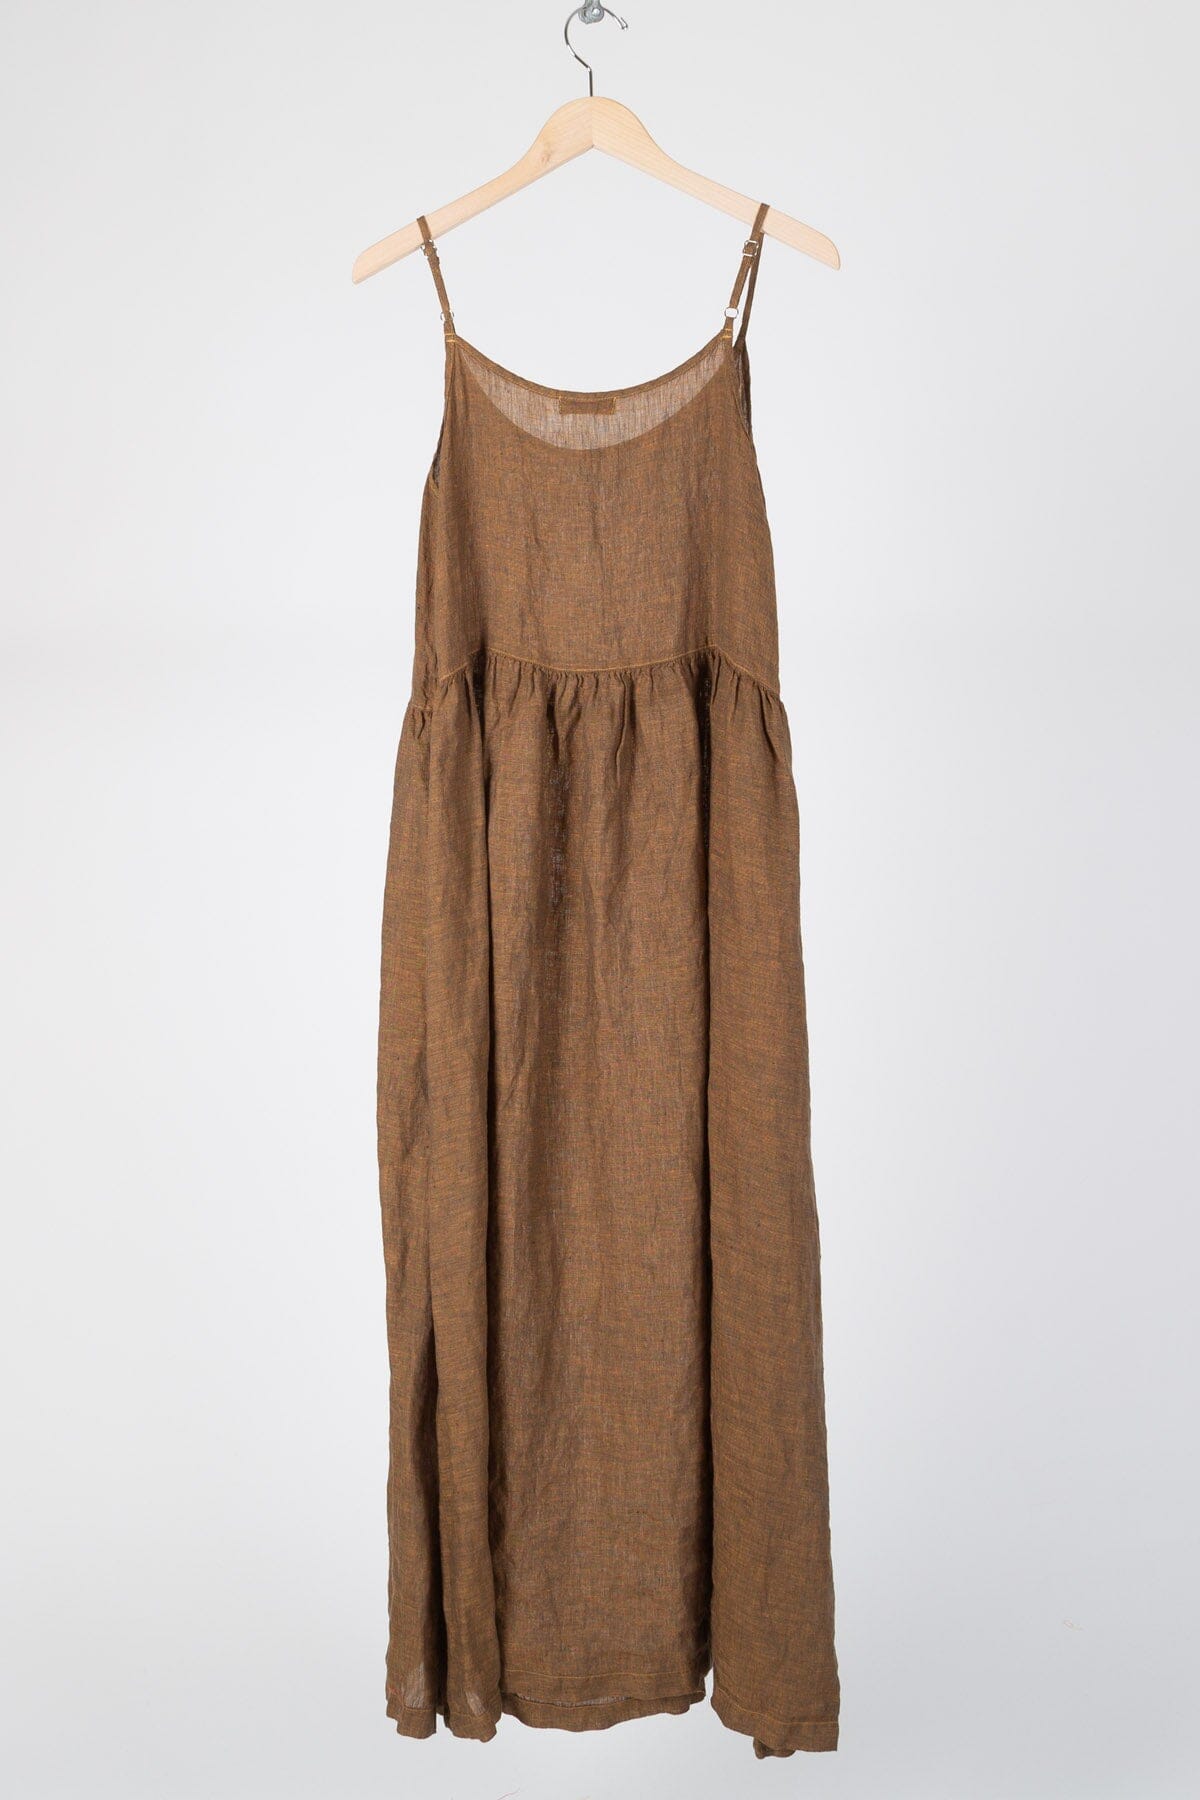 Hazel - Iridescent Linen S16 - Iridescent Skirts/Dresses CP Shades 